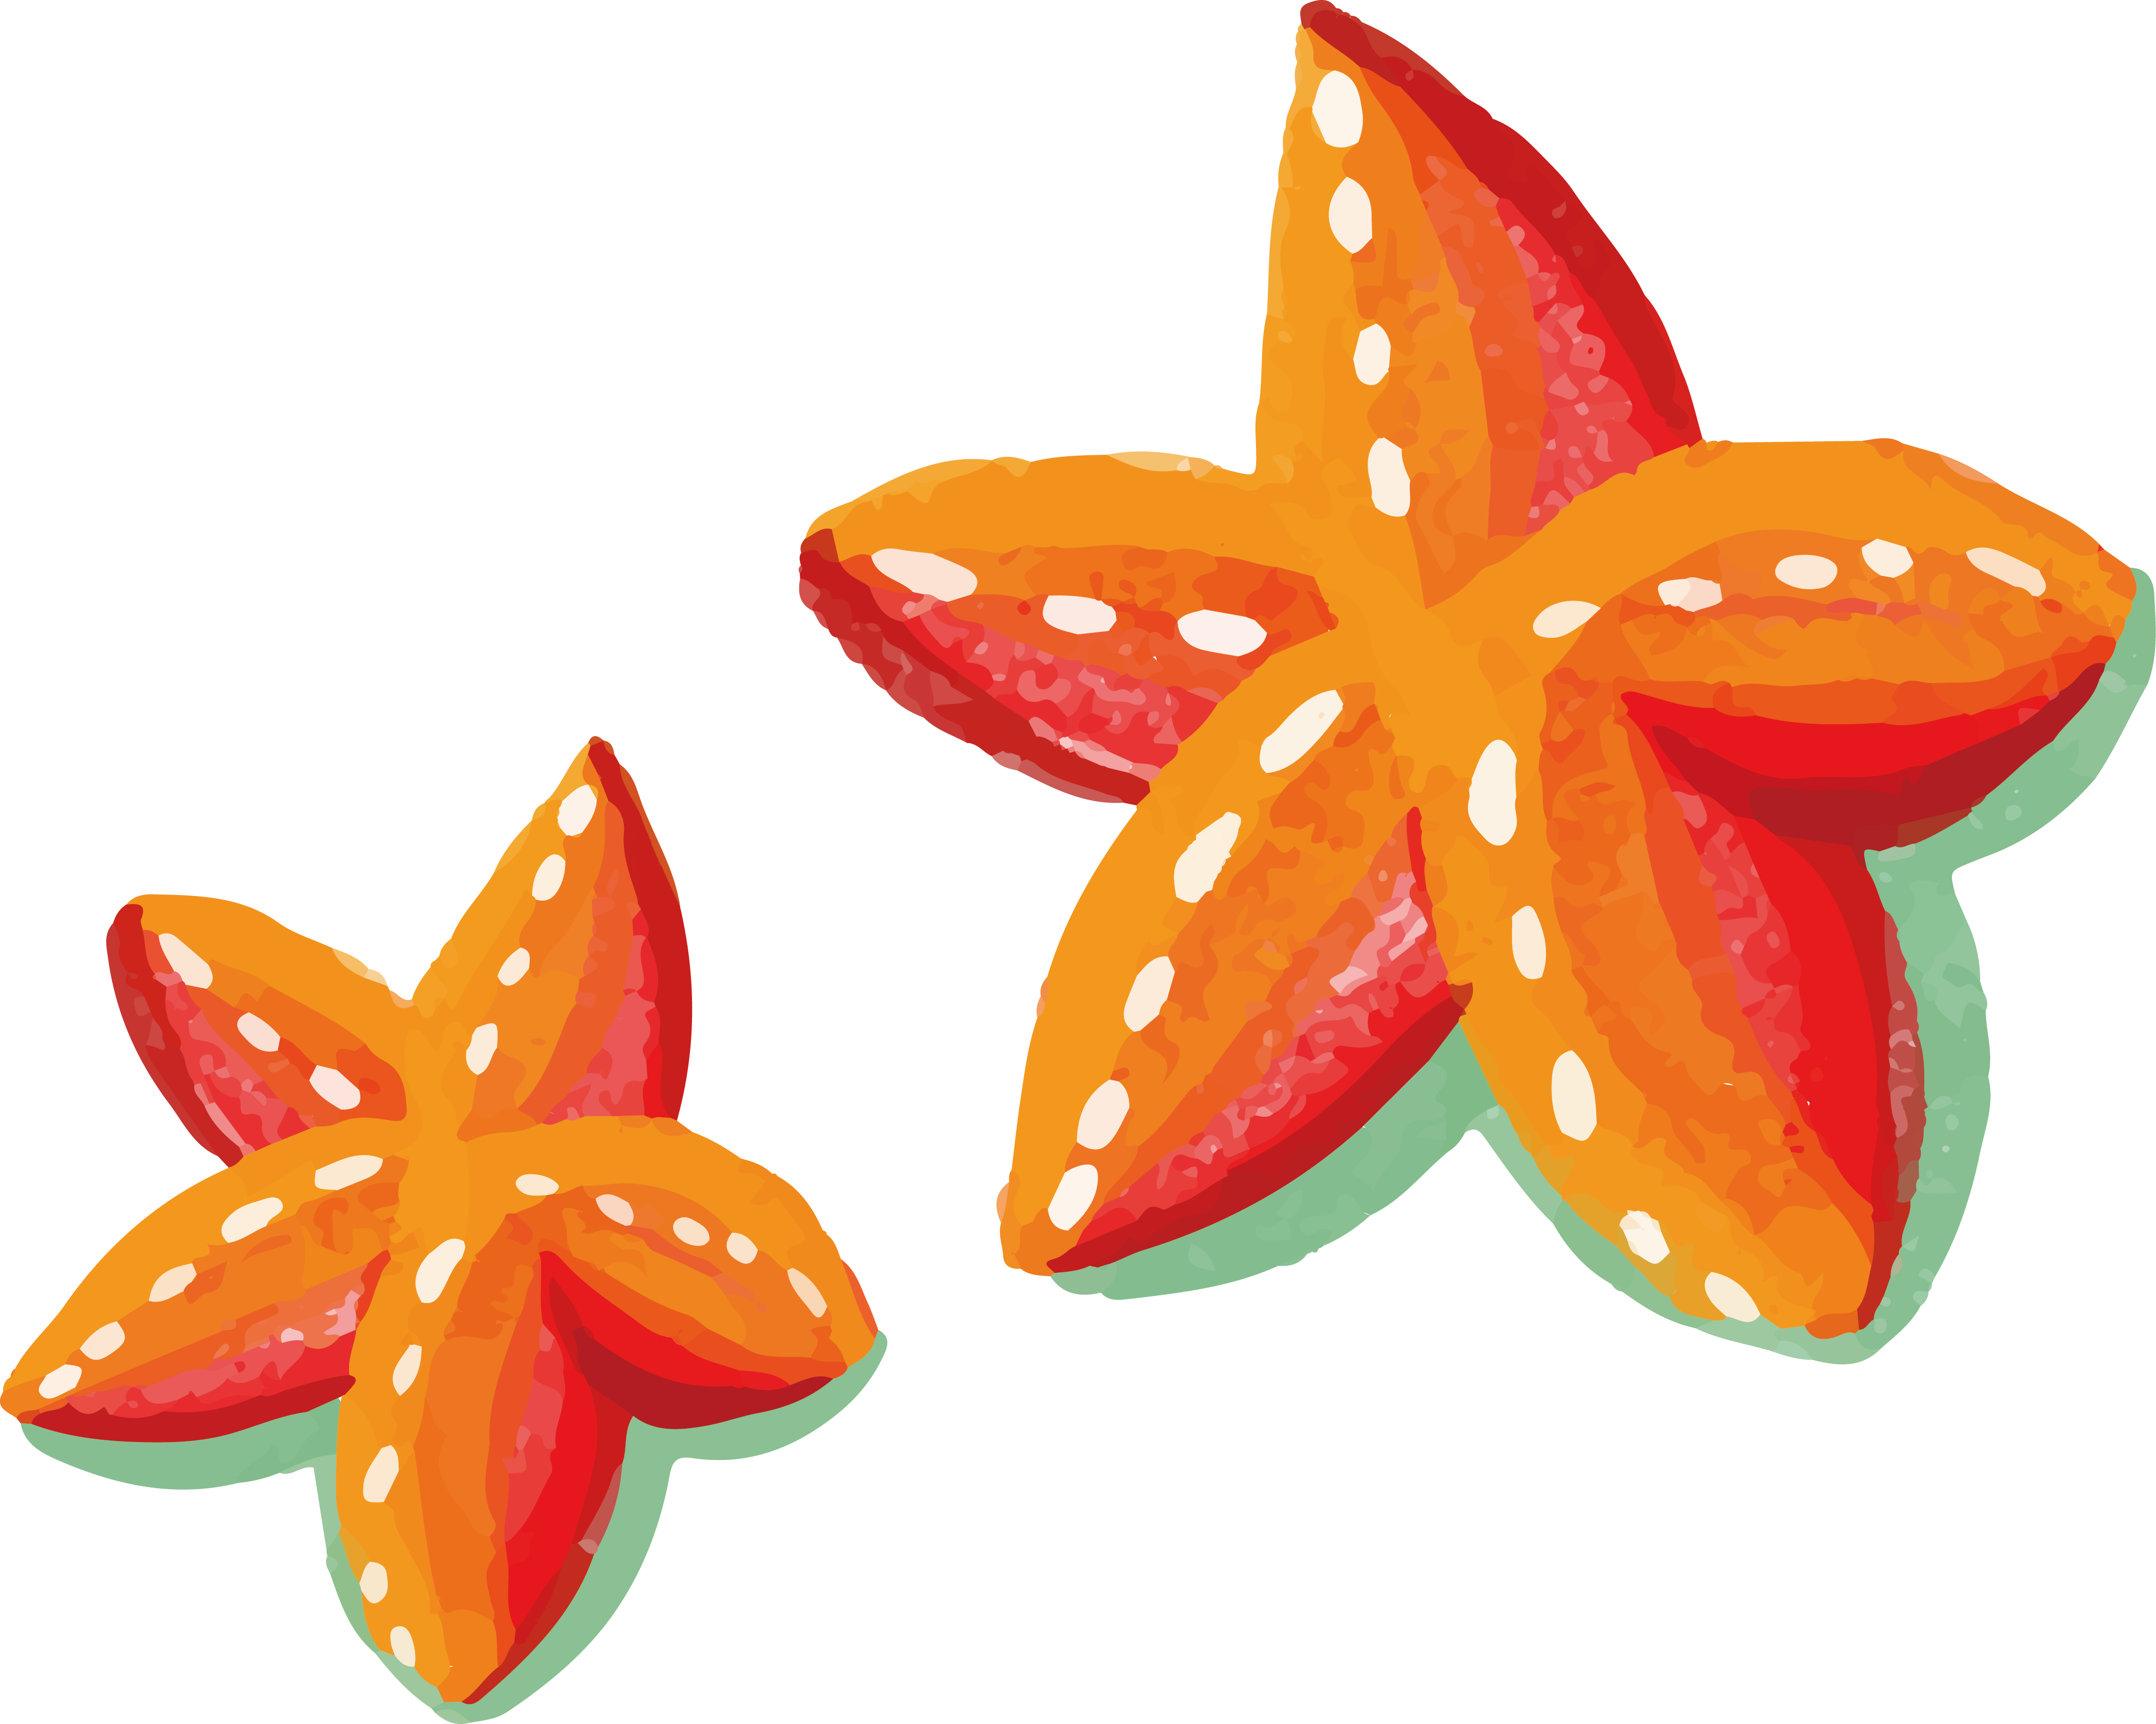 Watercolor Painting Starfish - Starfish (4343x3473)